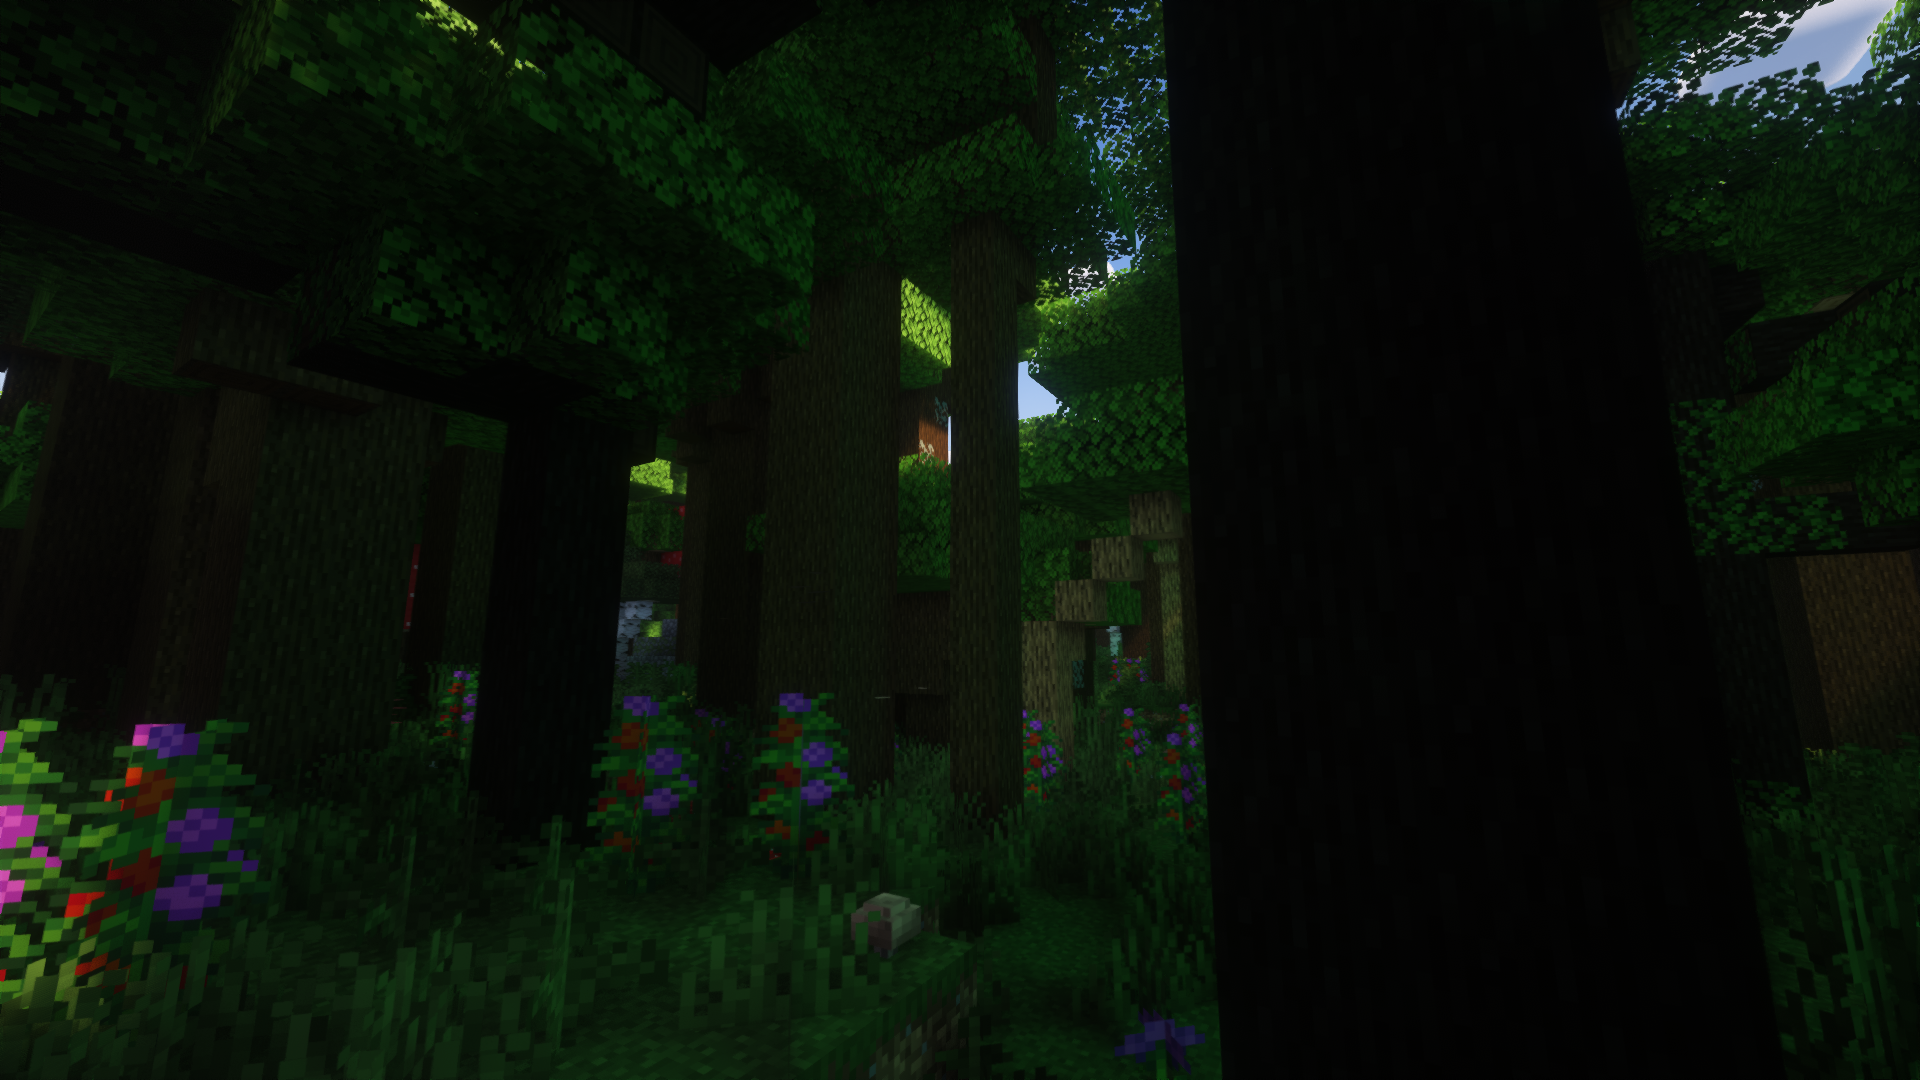 A Dense dark forest, flora everywhere